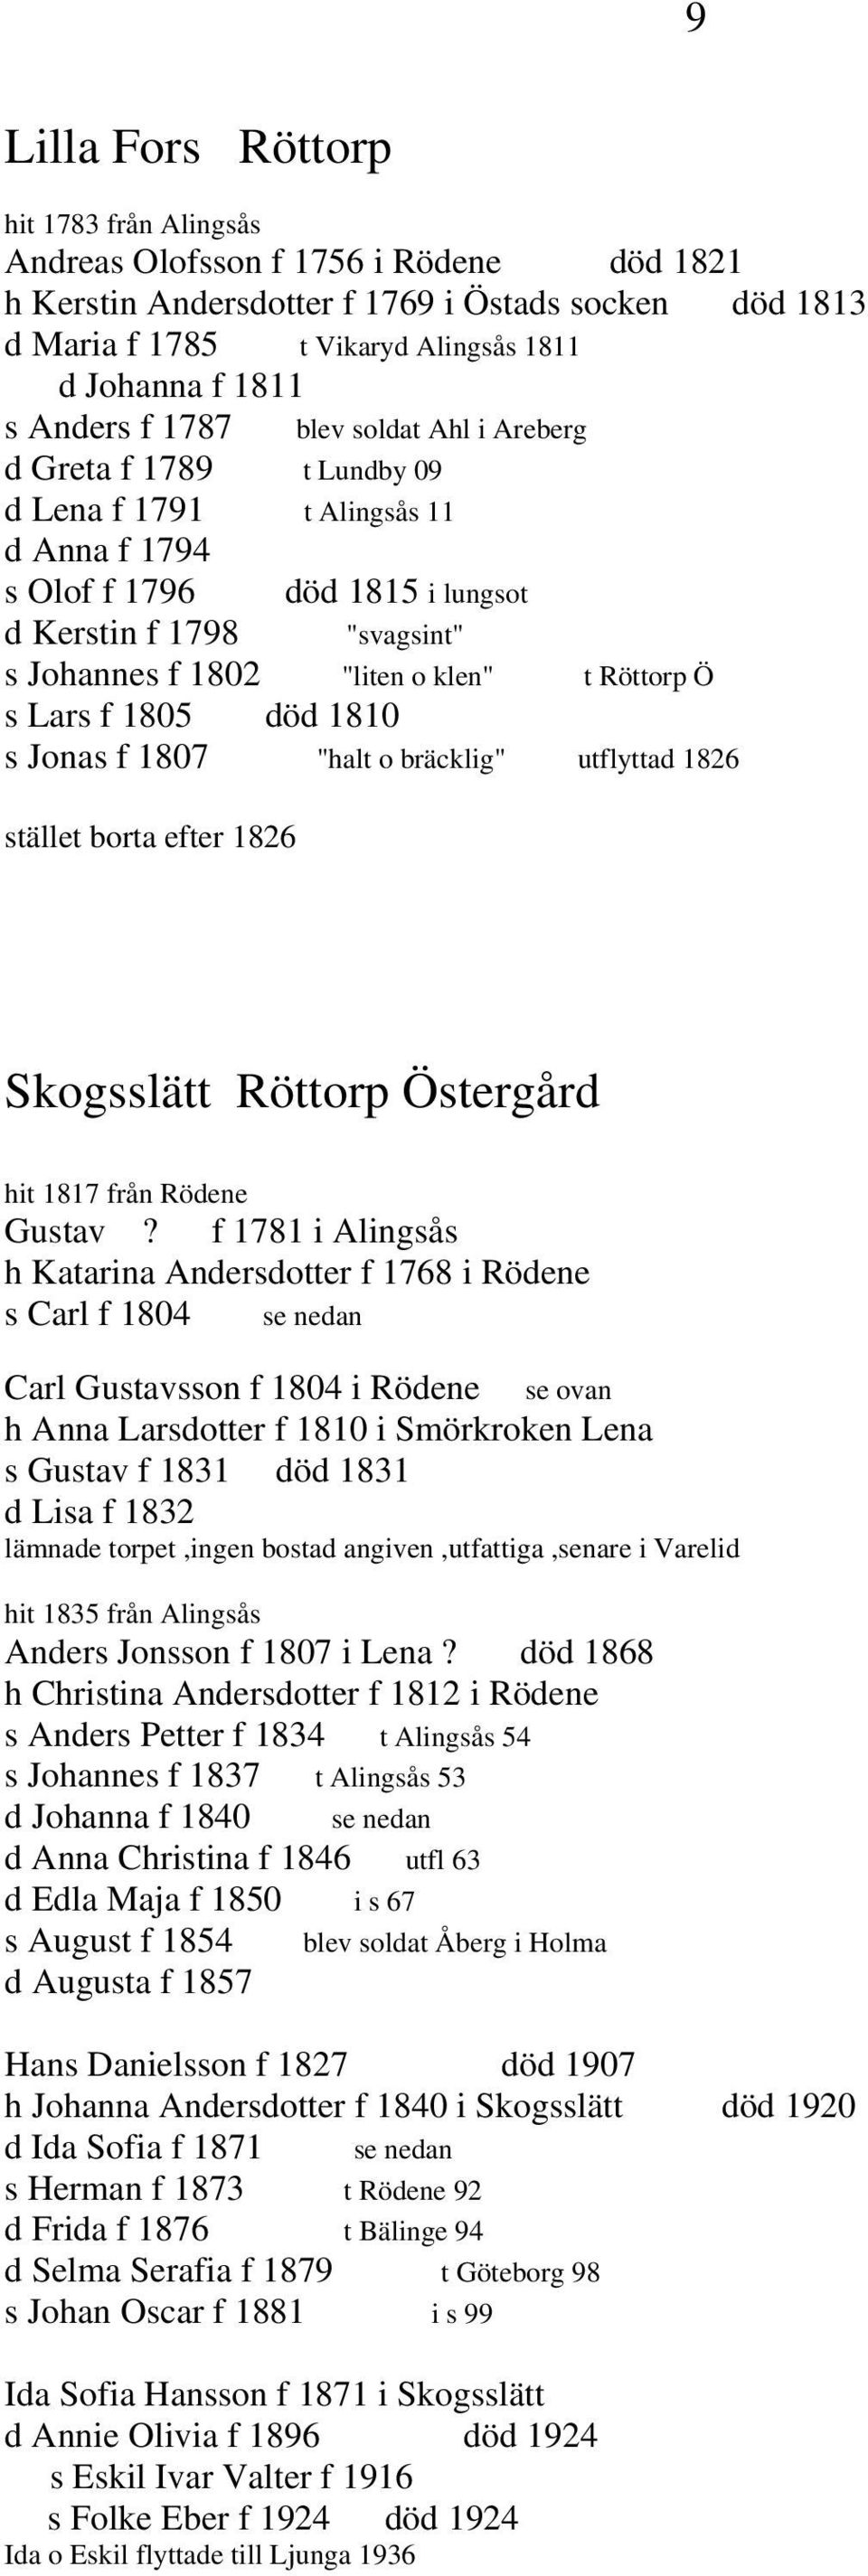 klen" t Röttorp Ö s Lars f 1805 död 1810 s Jonas f 1807 "halt o bräcklig" utflyttad 1826 stället borta efter 1826 Skogsslätt Röttorp Östergård hit 1817 från Rödene Gustav?